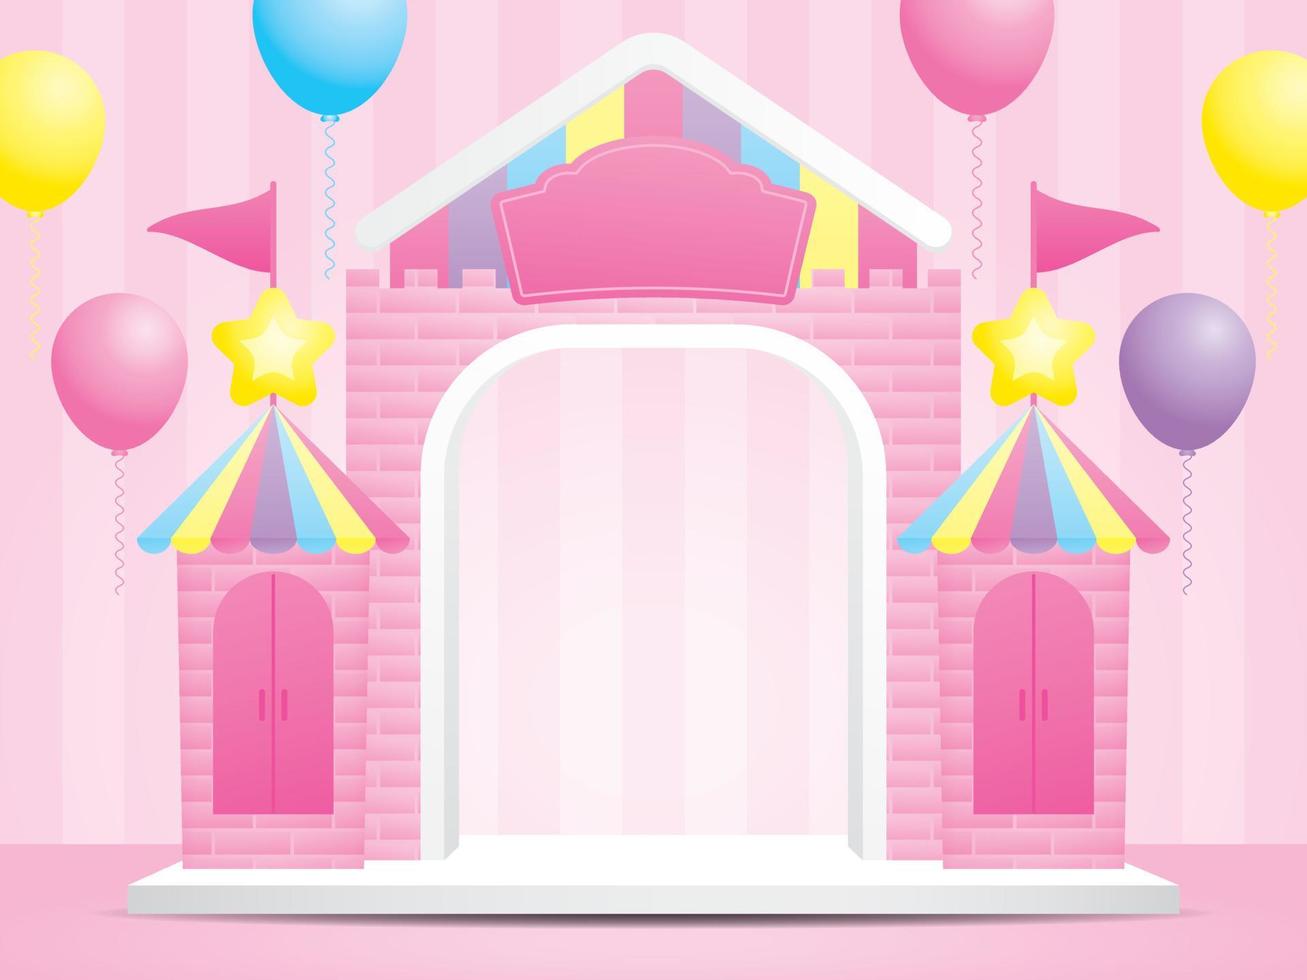 niedlicher kawaii schlosshintergrund zeigt 3d-illustrationsvektor an, um ihr objekt mit luftballons grafisches element auf rosa gestreiftem hintergrund zu setzen vektor